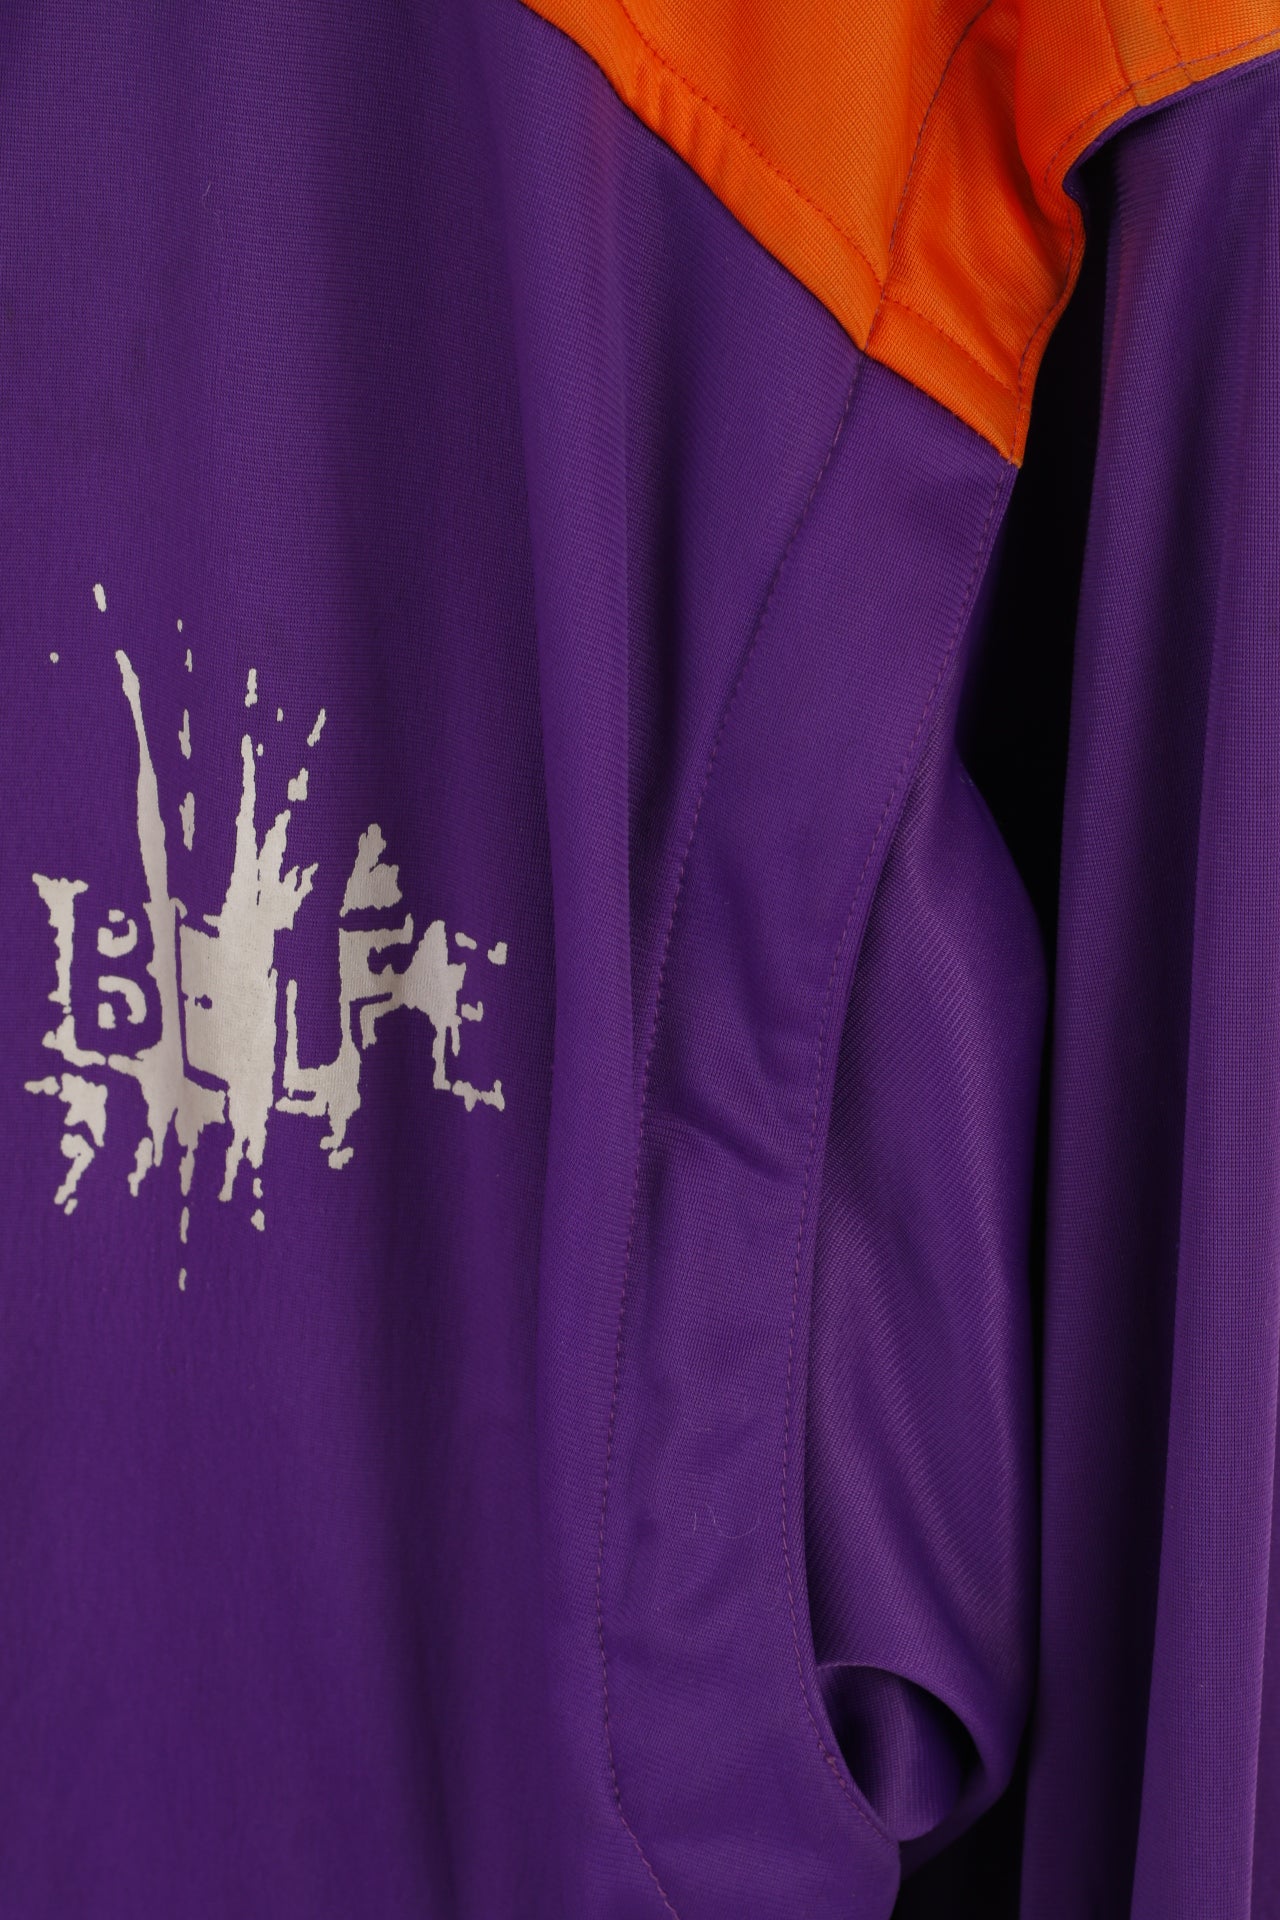 Belfe Men 50 40 M Sweatshirt Purple Vintage Zip Up Removable Sleeve Top